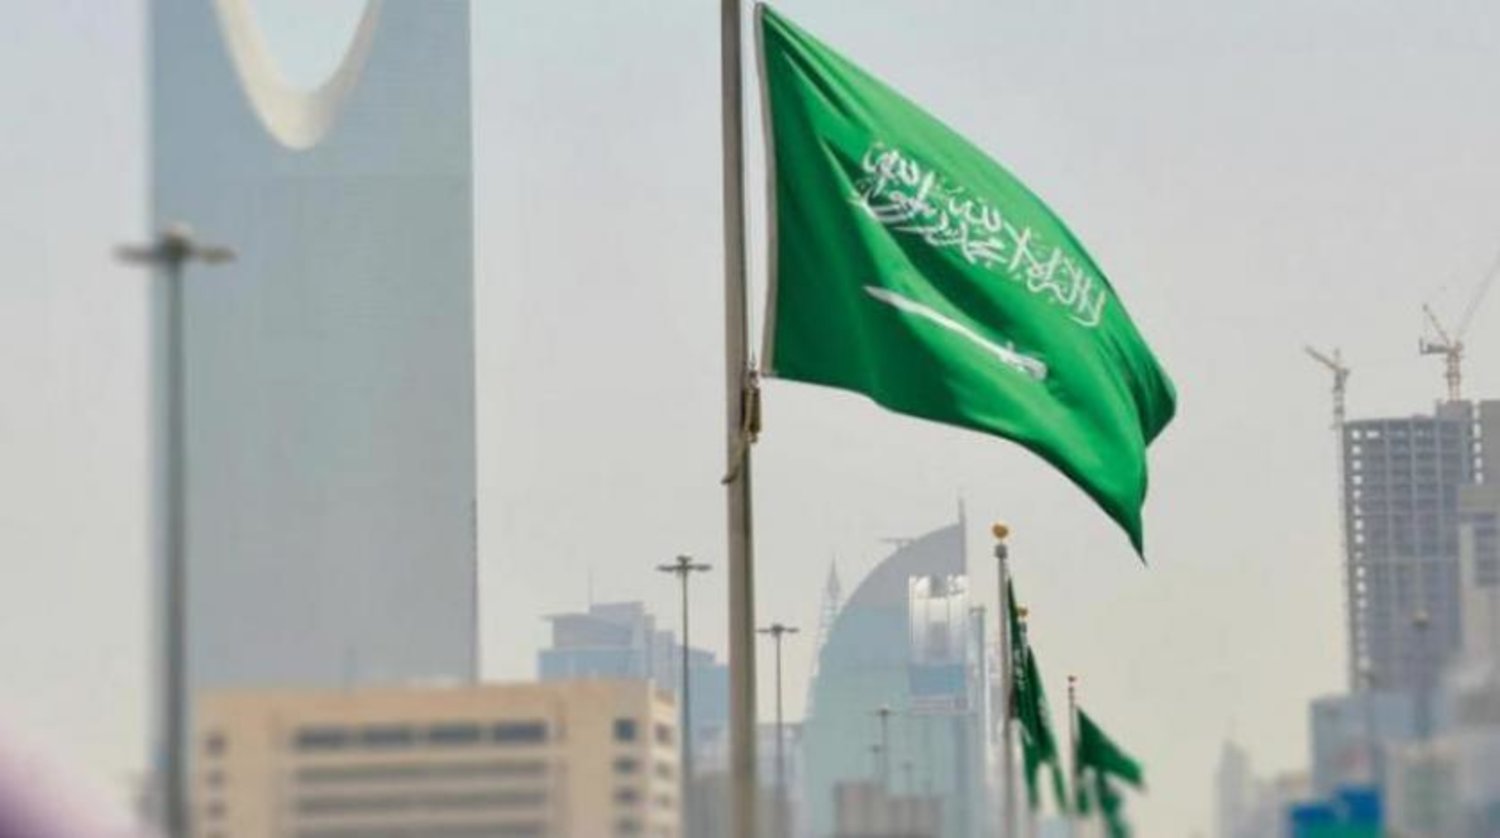 İnsan Hakları Komisyonu, Suudi Arabistan hükümetinin çocuk adaletine büyük önem verdiğinin tekrar altını çizdi (Şarku’l Avsat)